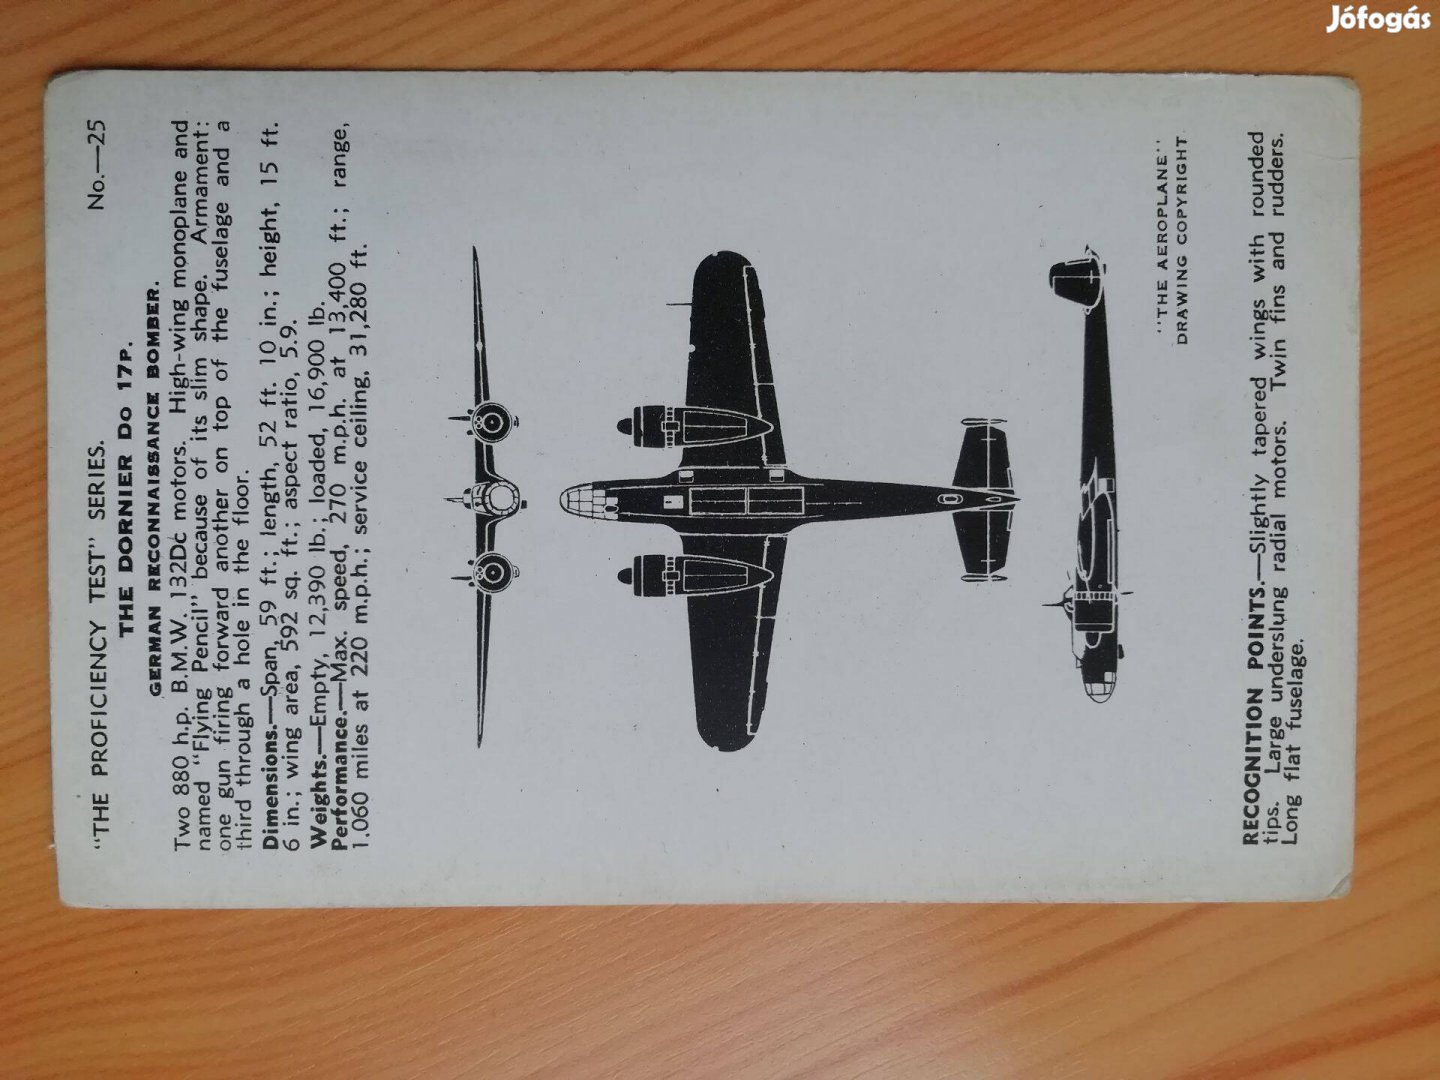 Német repülőgép Angol ismertető kártyán